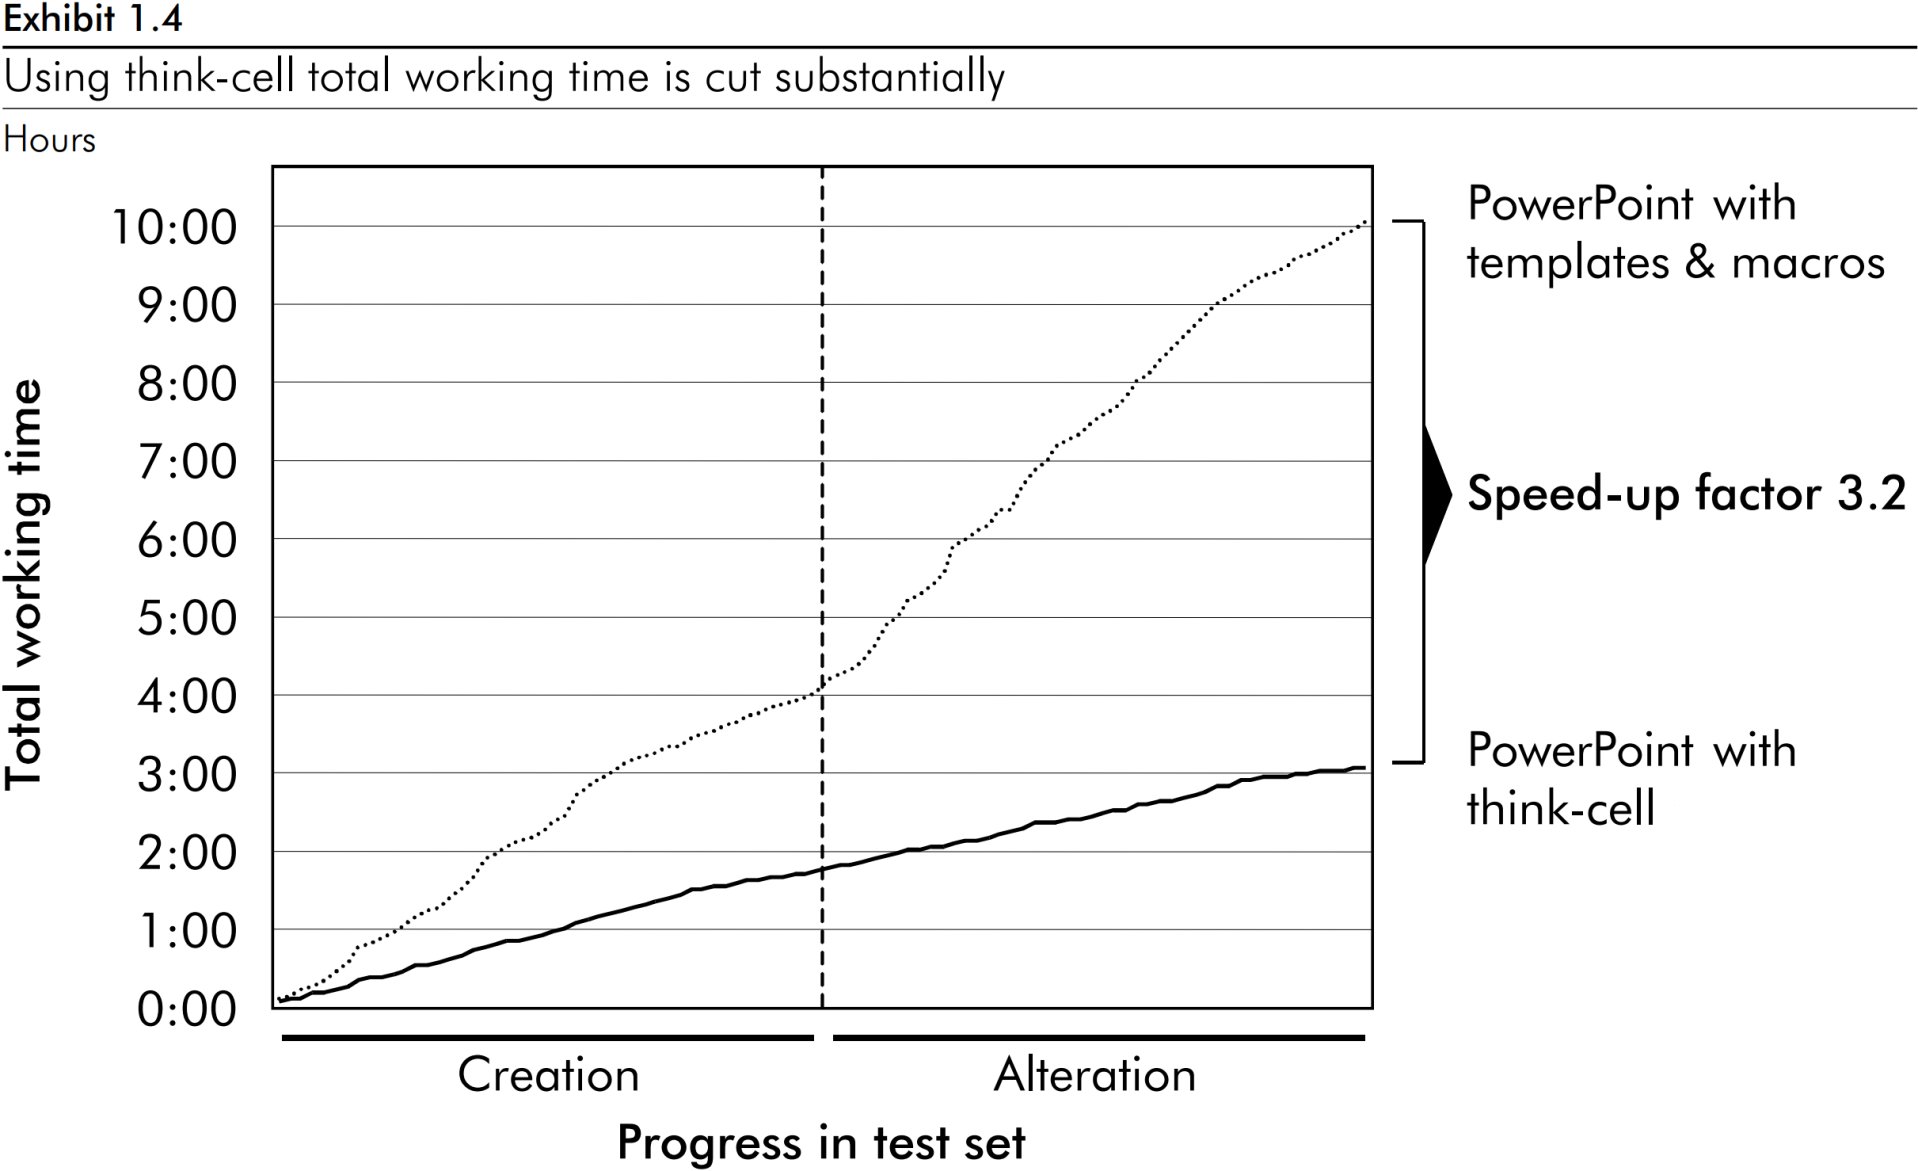 Gráfico de linhas mostrando um fator de aceleração de 3,2 quanto ao tempo total de trabalho com gráficos com think-cell.